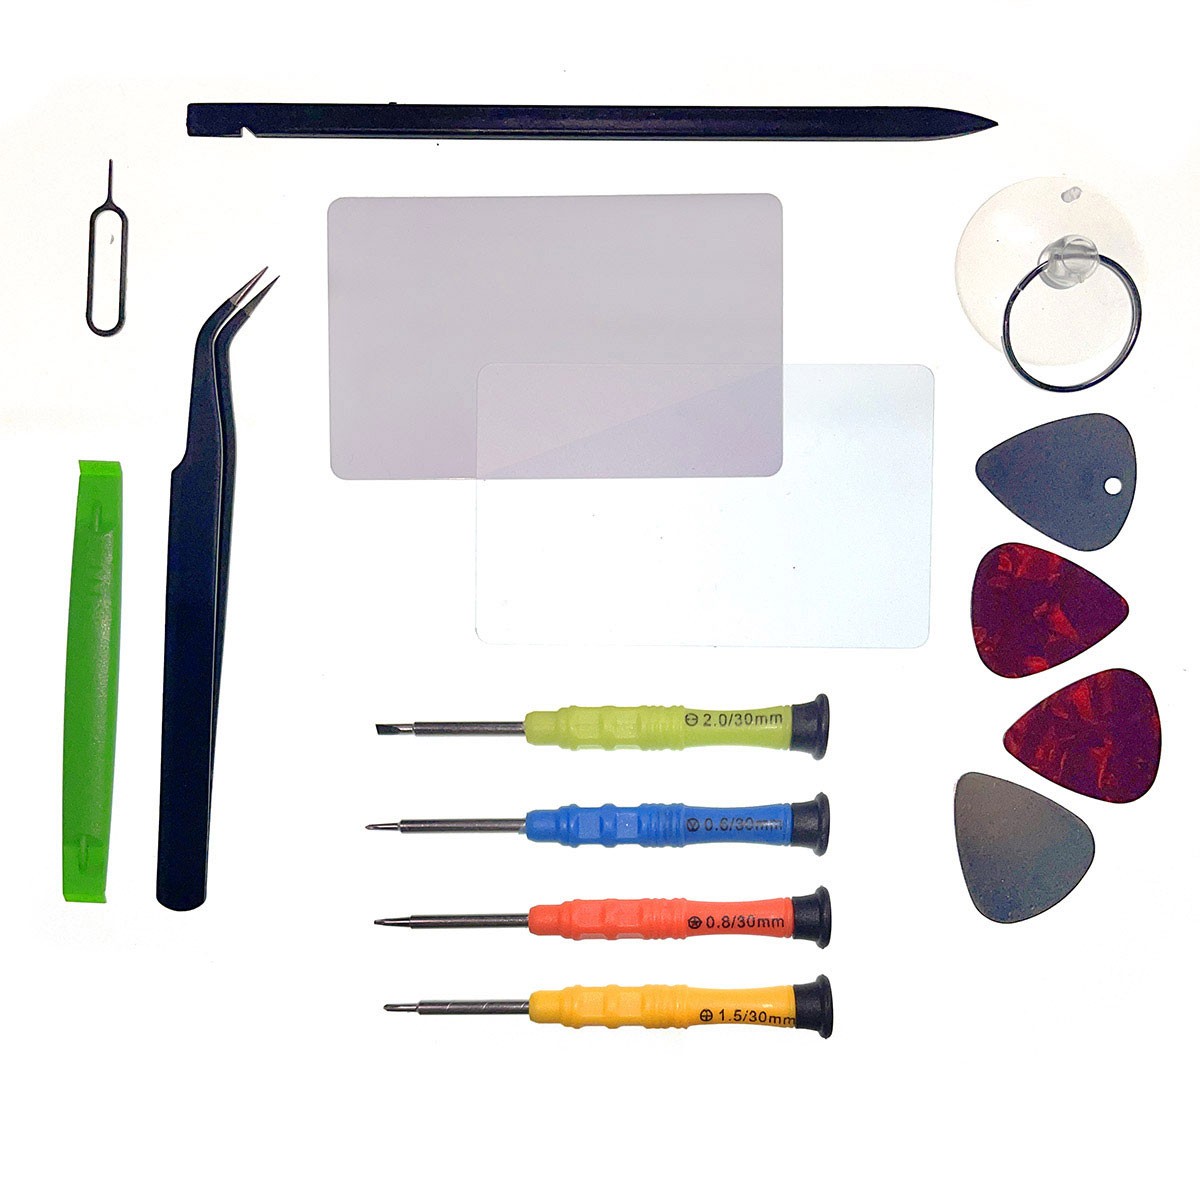 Le kit d'outils indispensable pour réparer votre iPhone